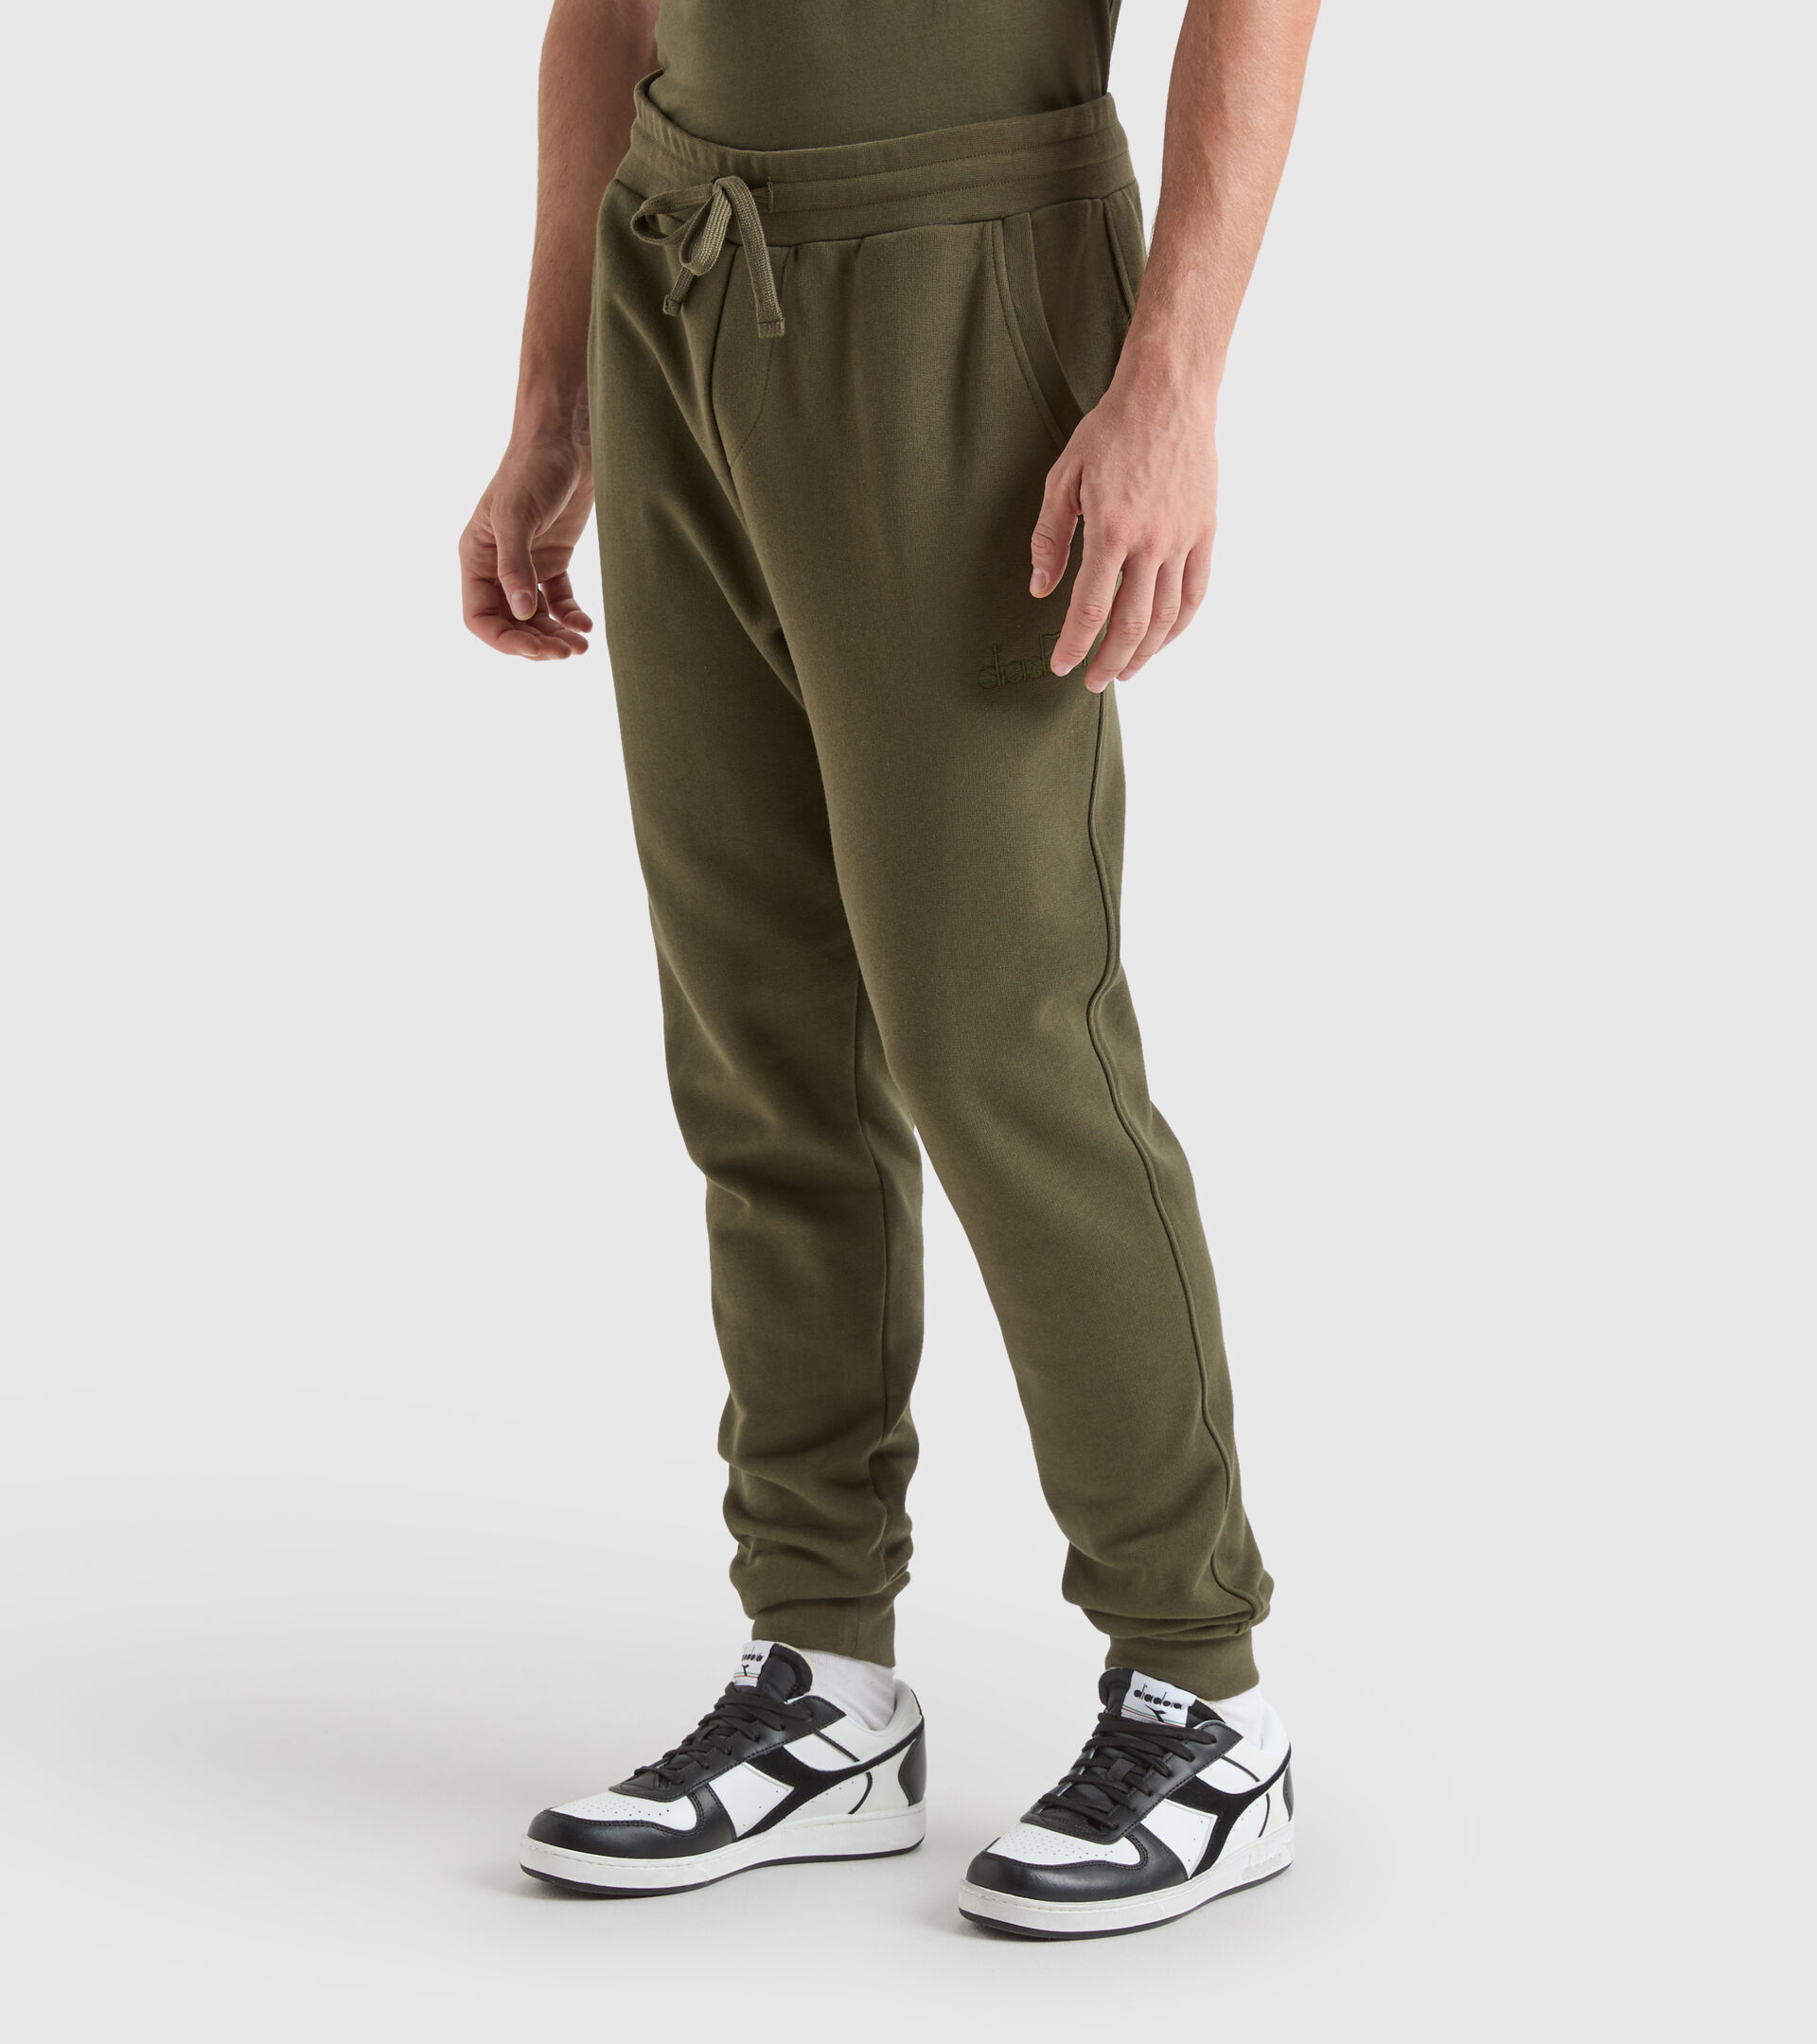 JOGGER PANT MII Pantalón deportivo de algodón - Hombre - Tienda en línea  Diadora MX